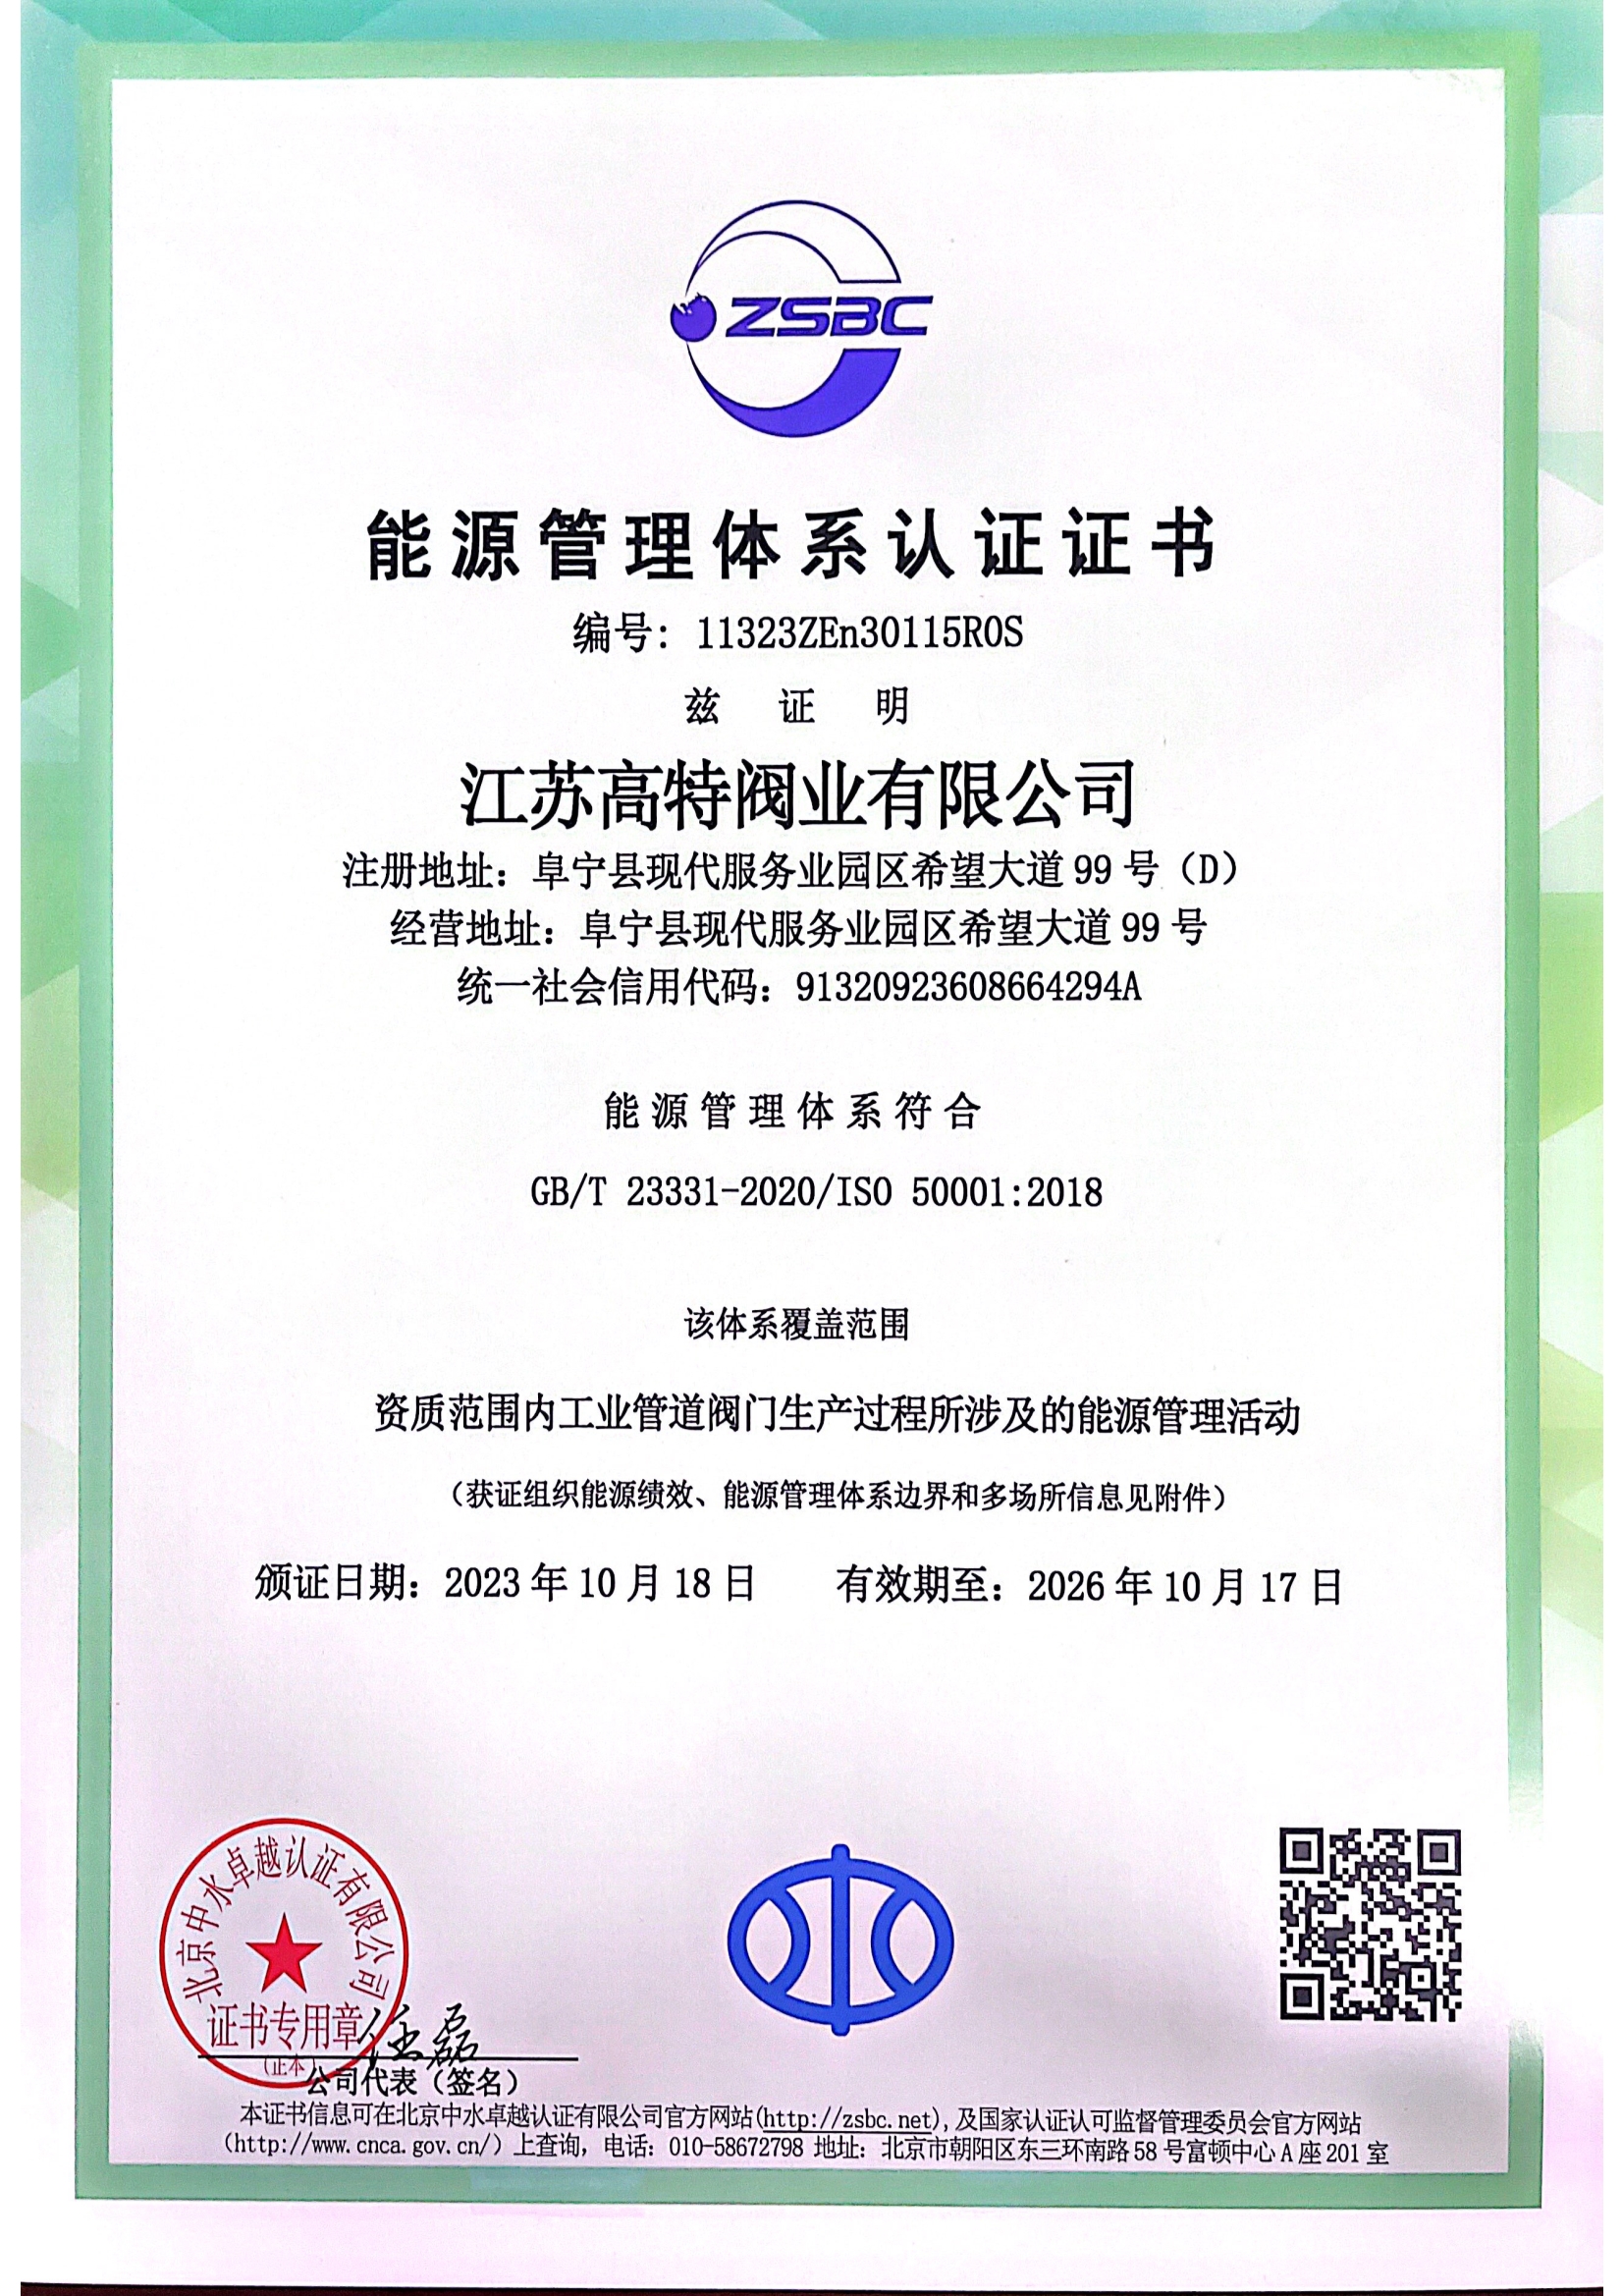 Jiangsu Gaote valve industry energy certification